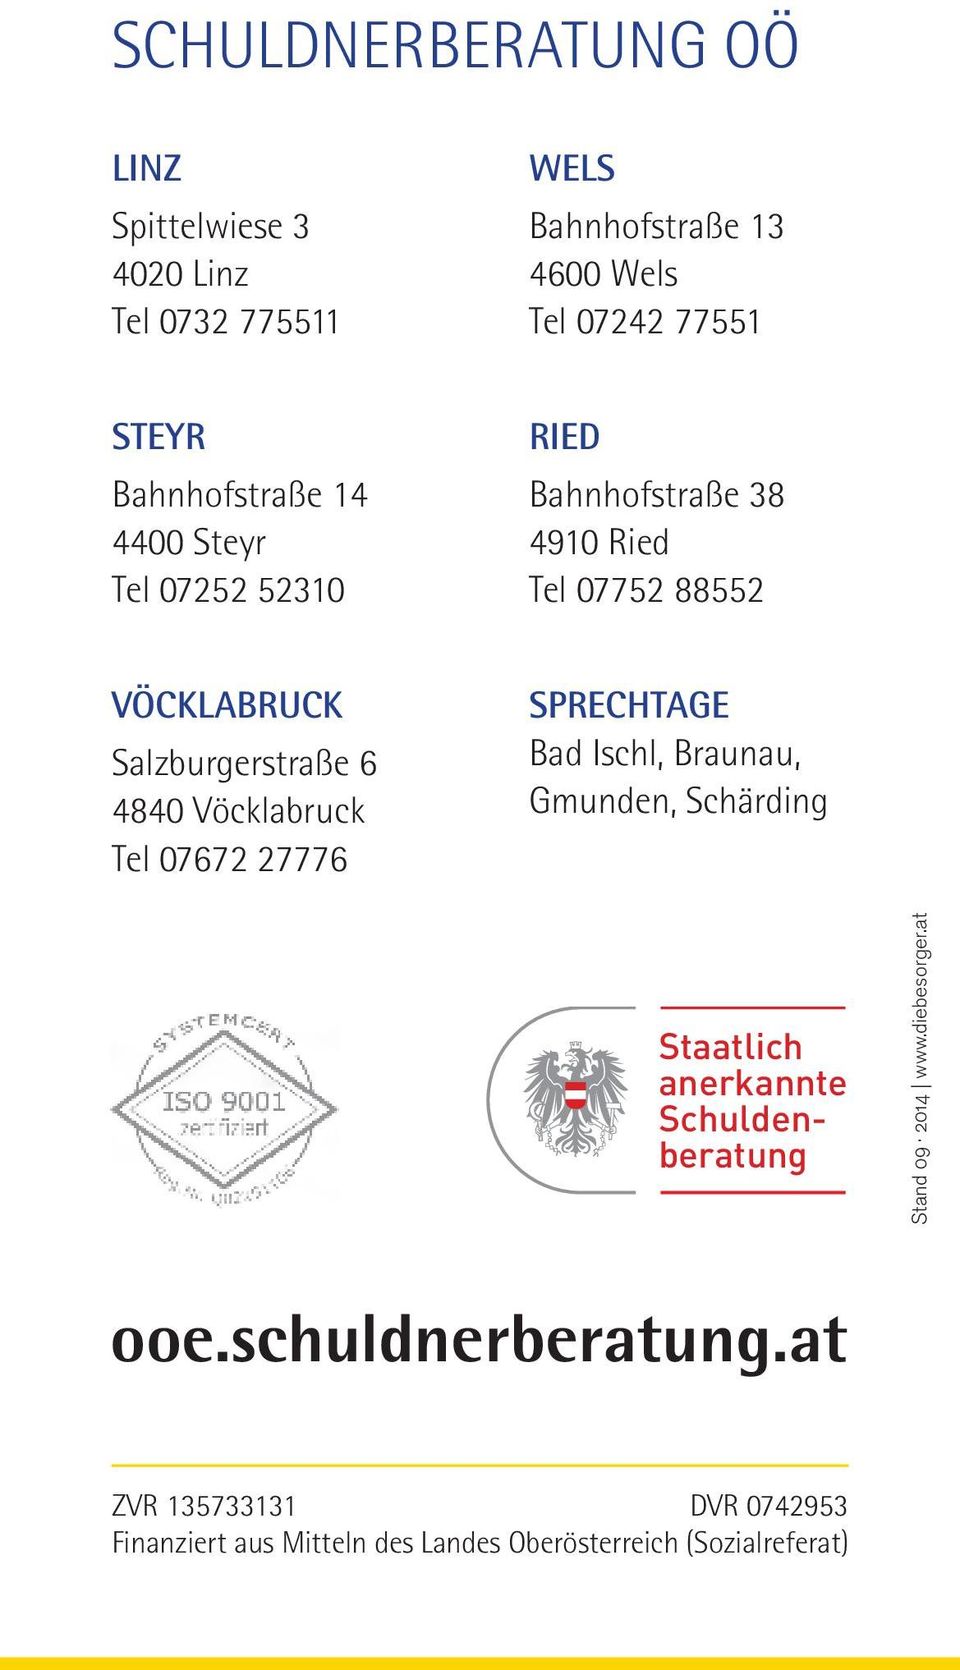 Vöcklabruck Tel 07672 27776 SPRECHTAGE Bad Ischl, Braunau, Gmunden, Schärding Staatlich anerkannte Schuldenberatung Stand 09